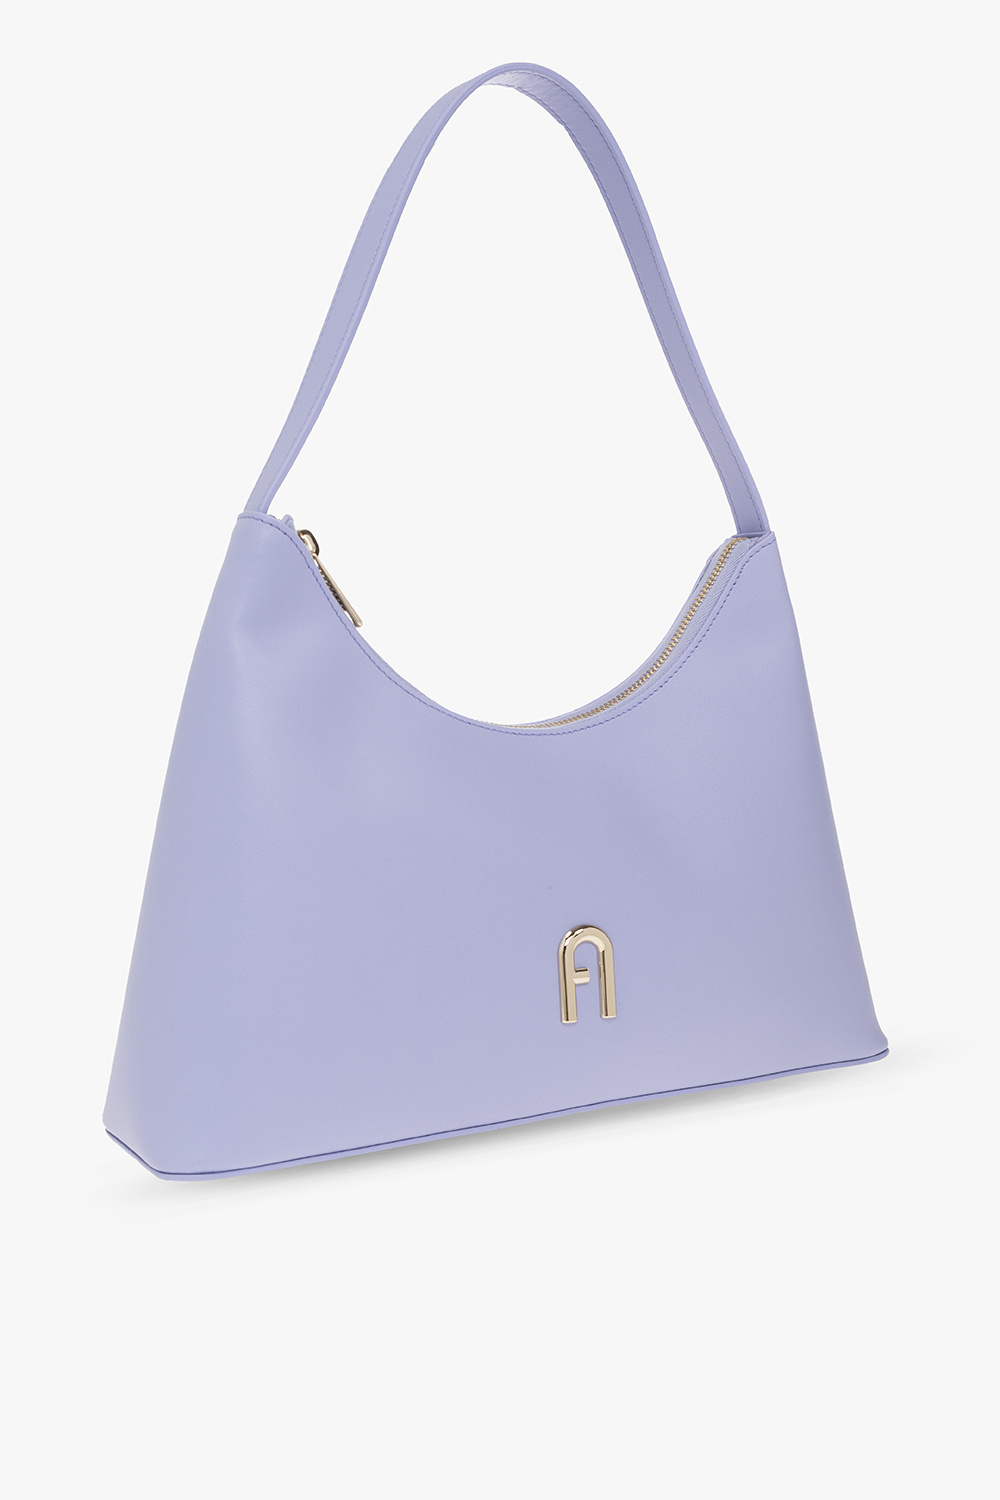 Louis Vuitton Capucines BB Bag - Vitkac shop online